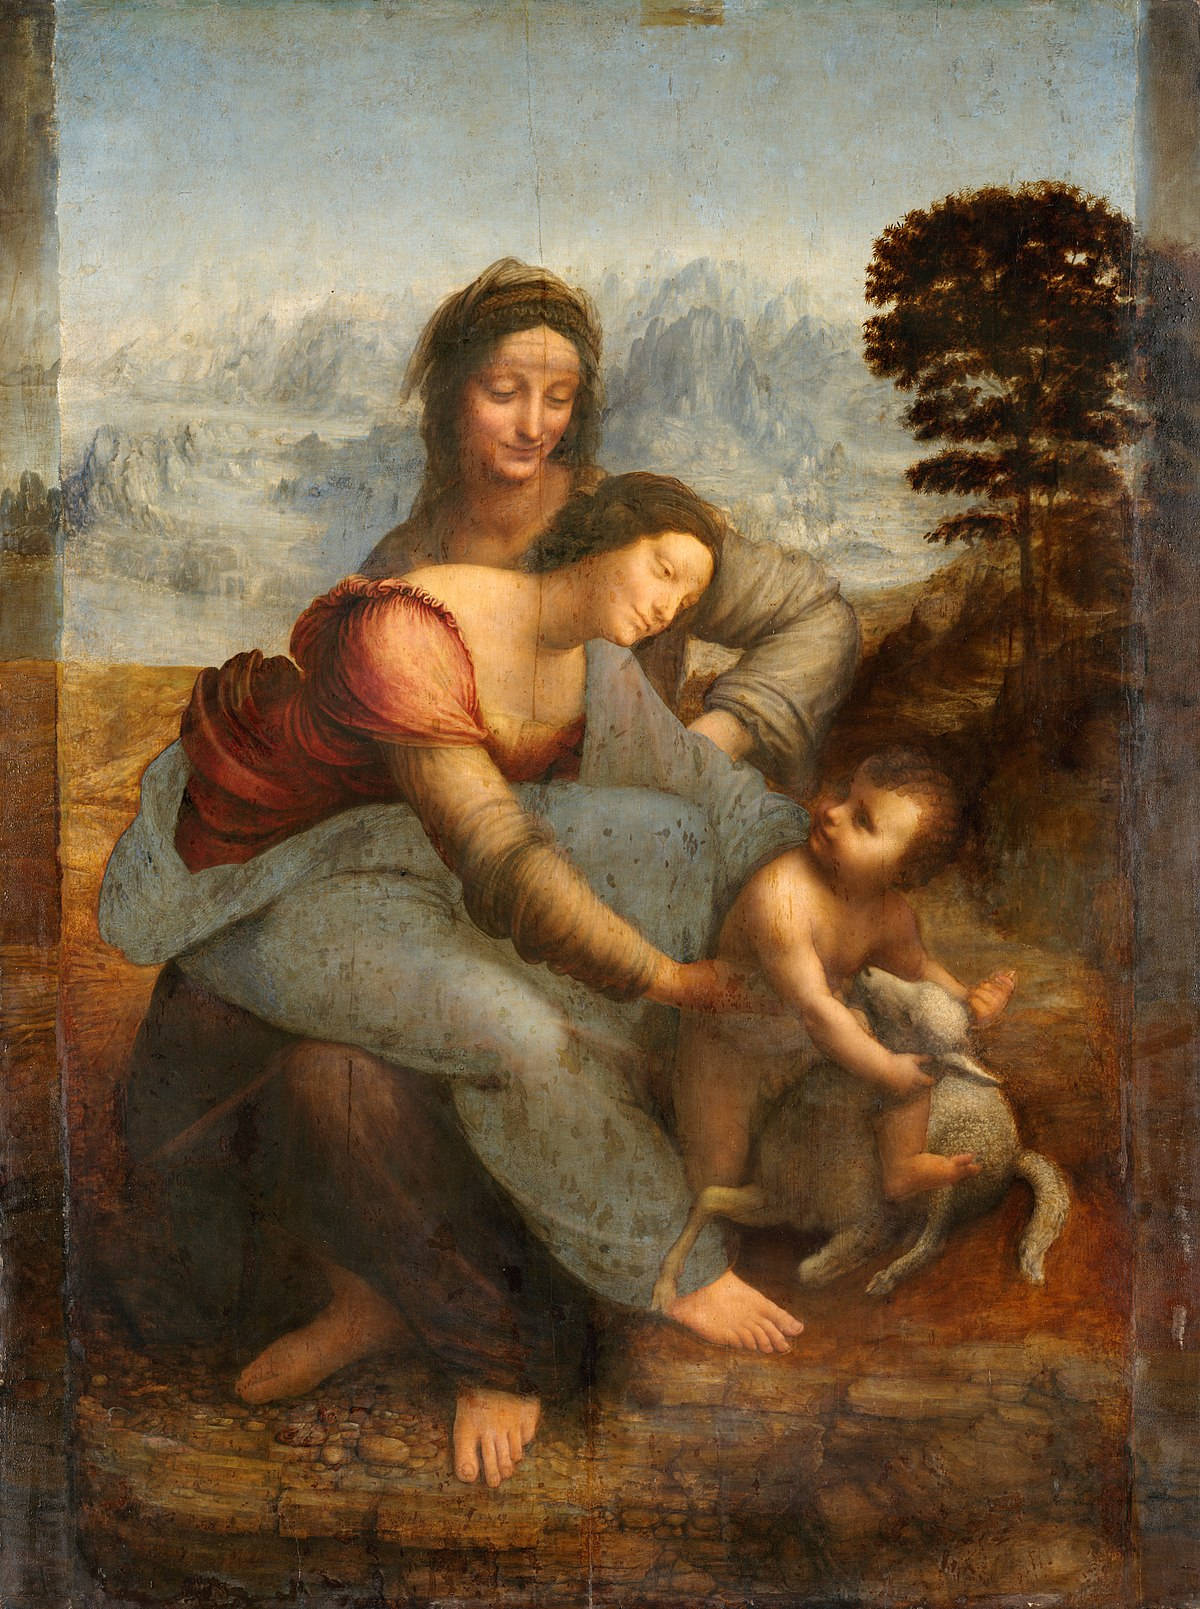 Leonardoda Vinci's Saint Anne Painting - Leonardos Målning Av Sankta Anna. Wallpaper